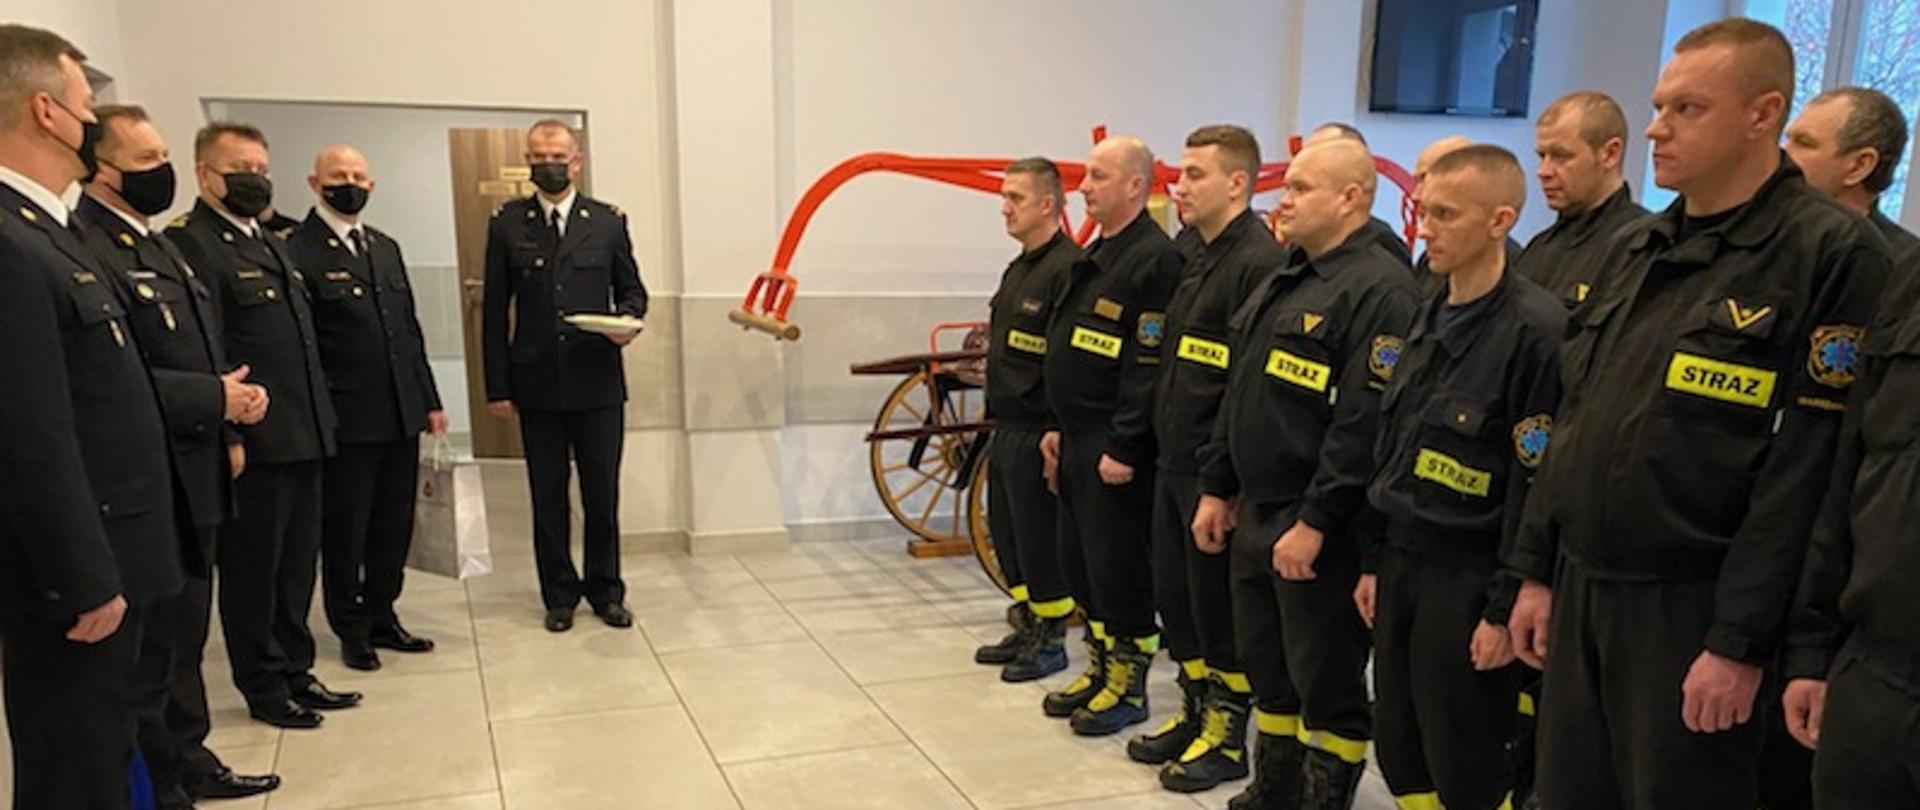 Po lewej kadra kierownicza Państwowej Straży Pożarnej , po prawej zmiana służbowa na spotkaniu przedświątecznym W tle zabytkowa sikawka